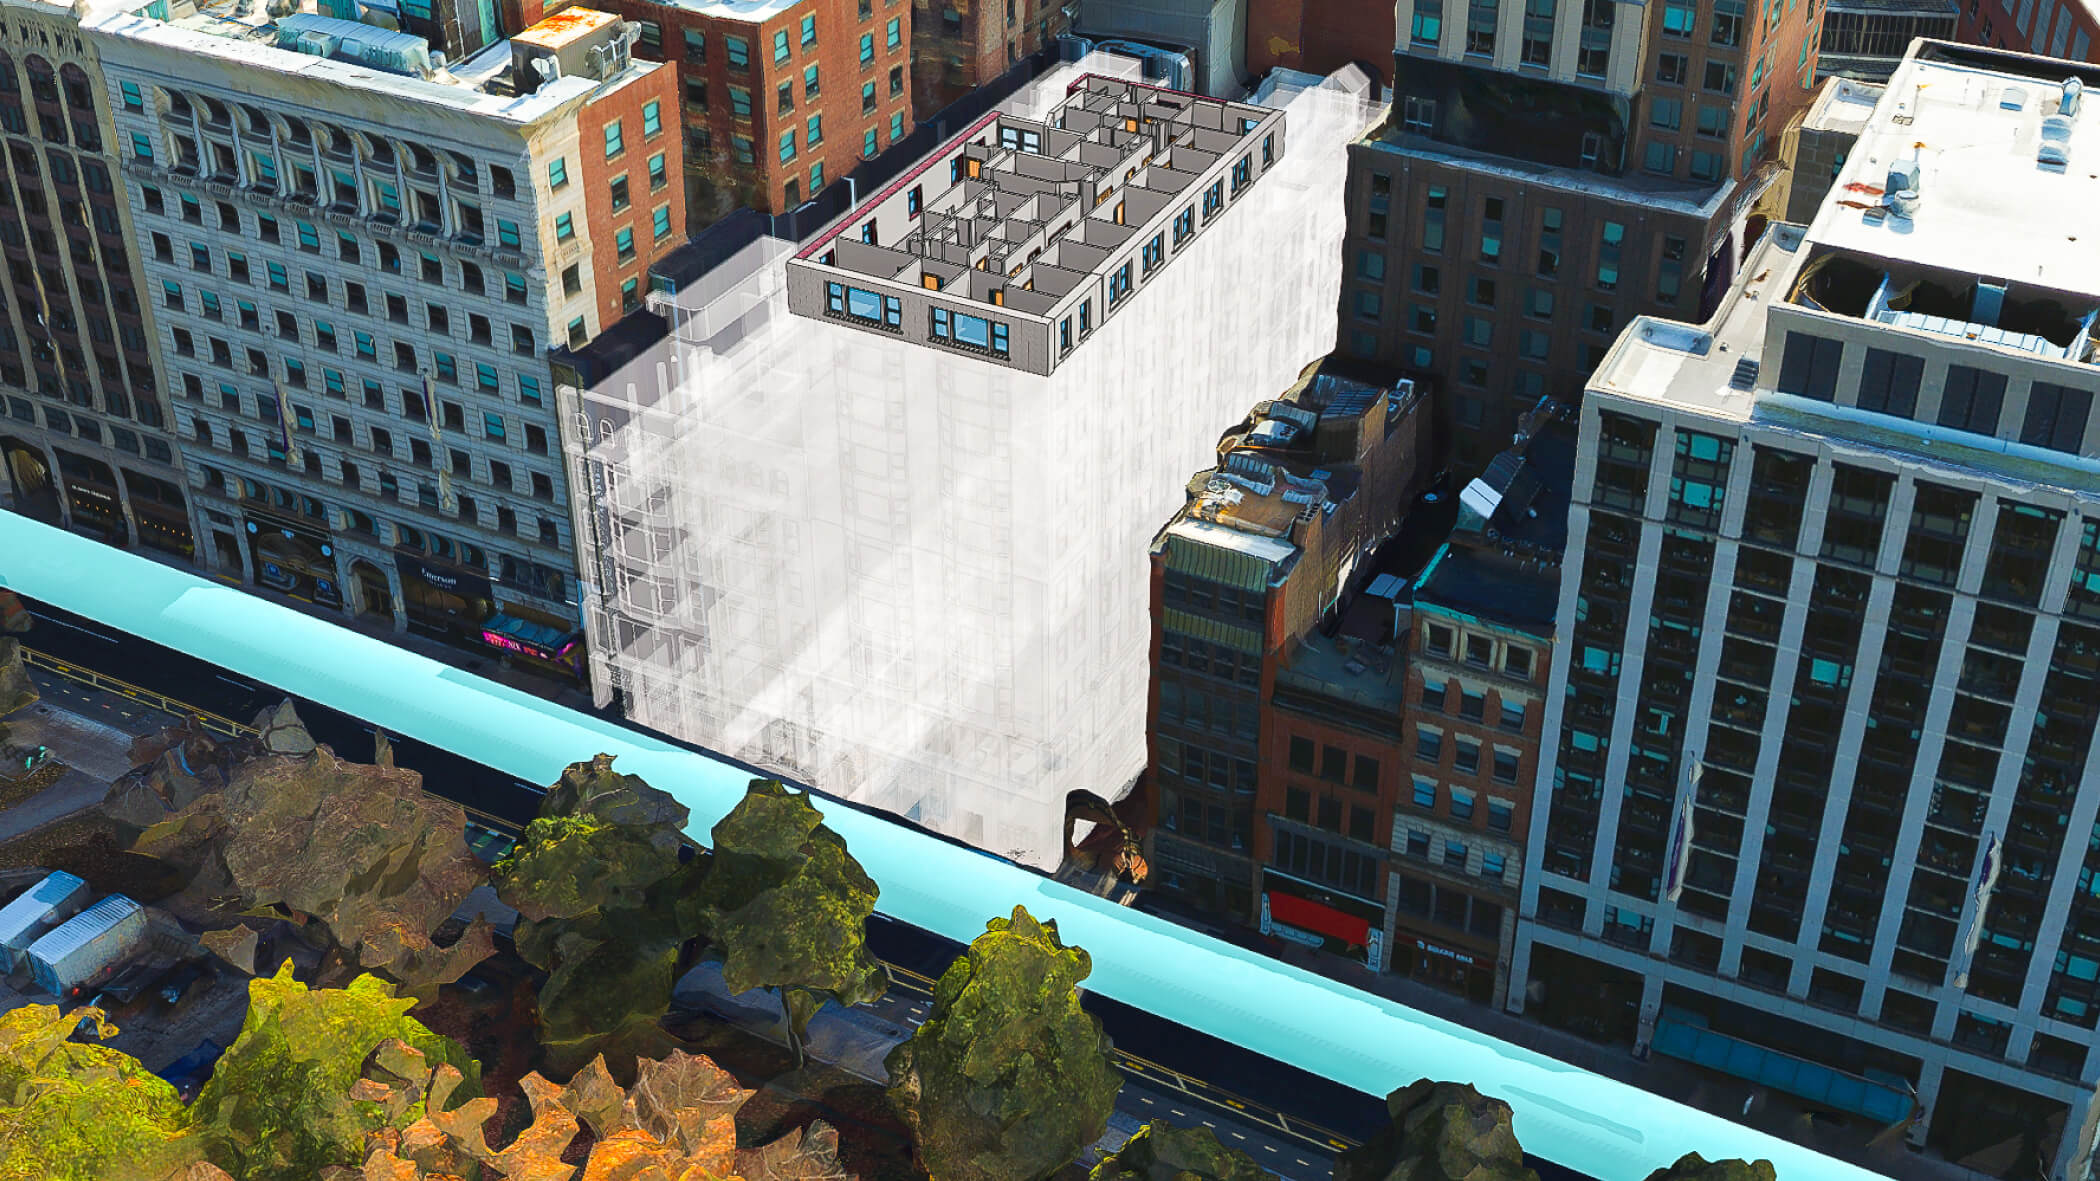 3D-модель здания с множеством этажей, увенчанная 3D-макетом комнаты, заключенная в белую рамку на размытом фоне города